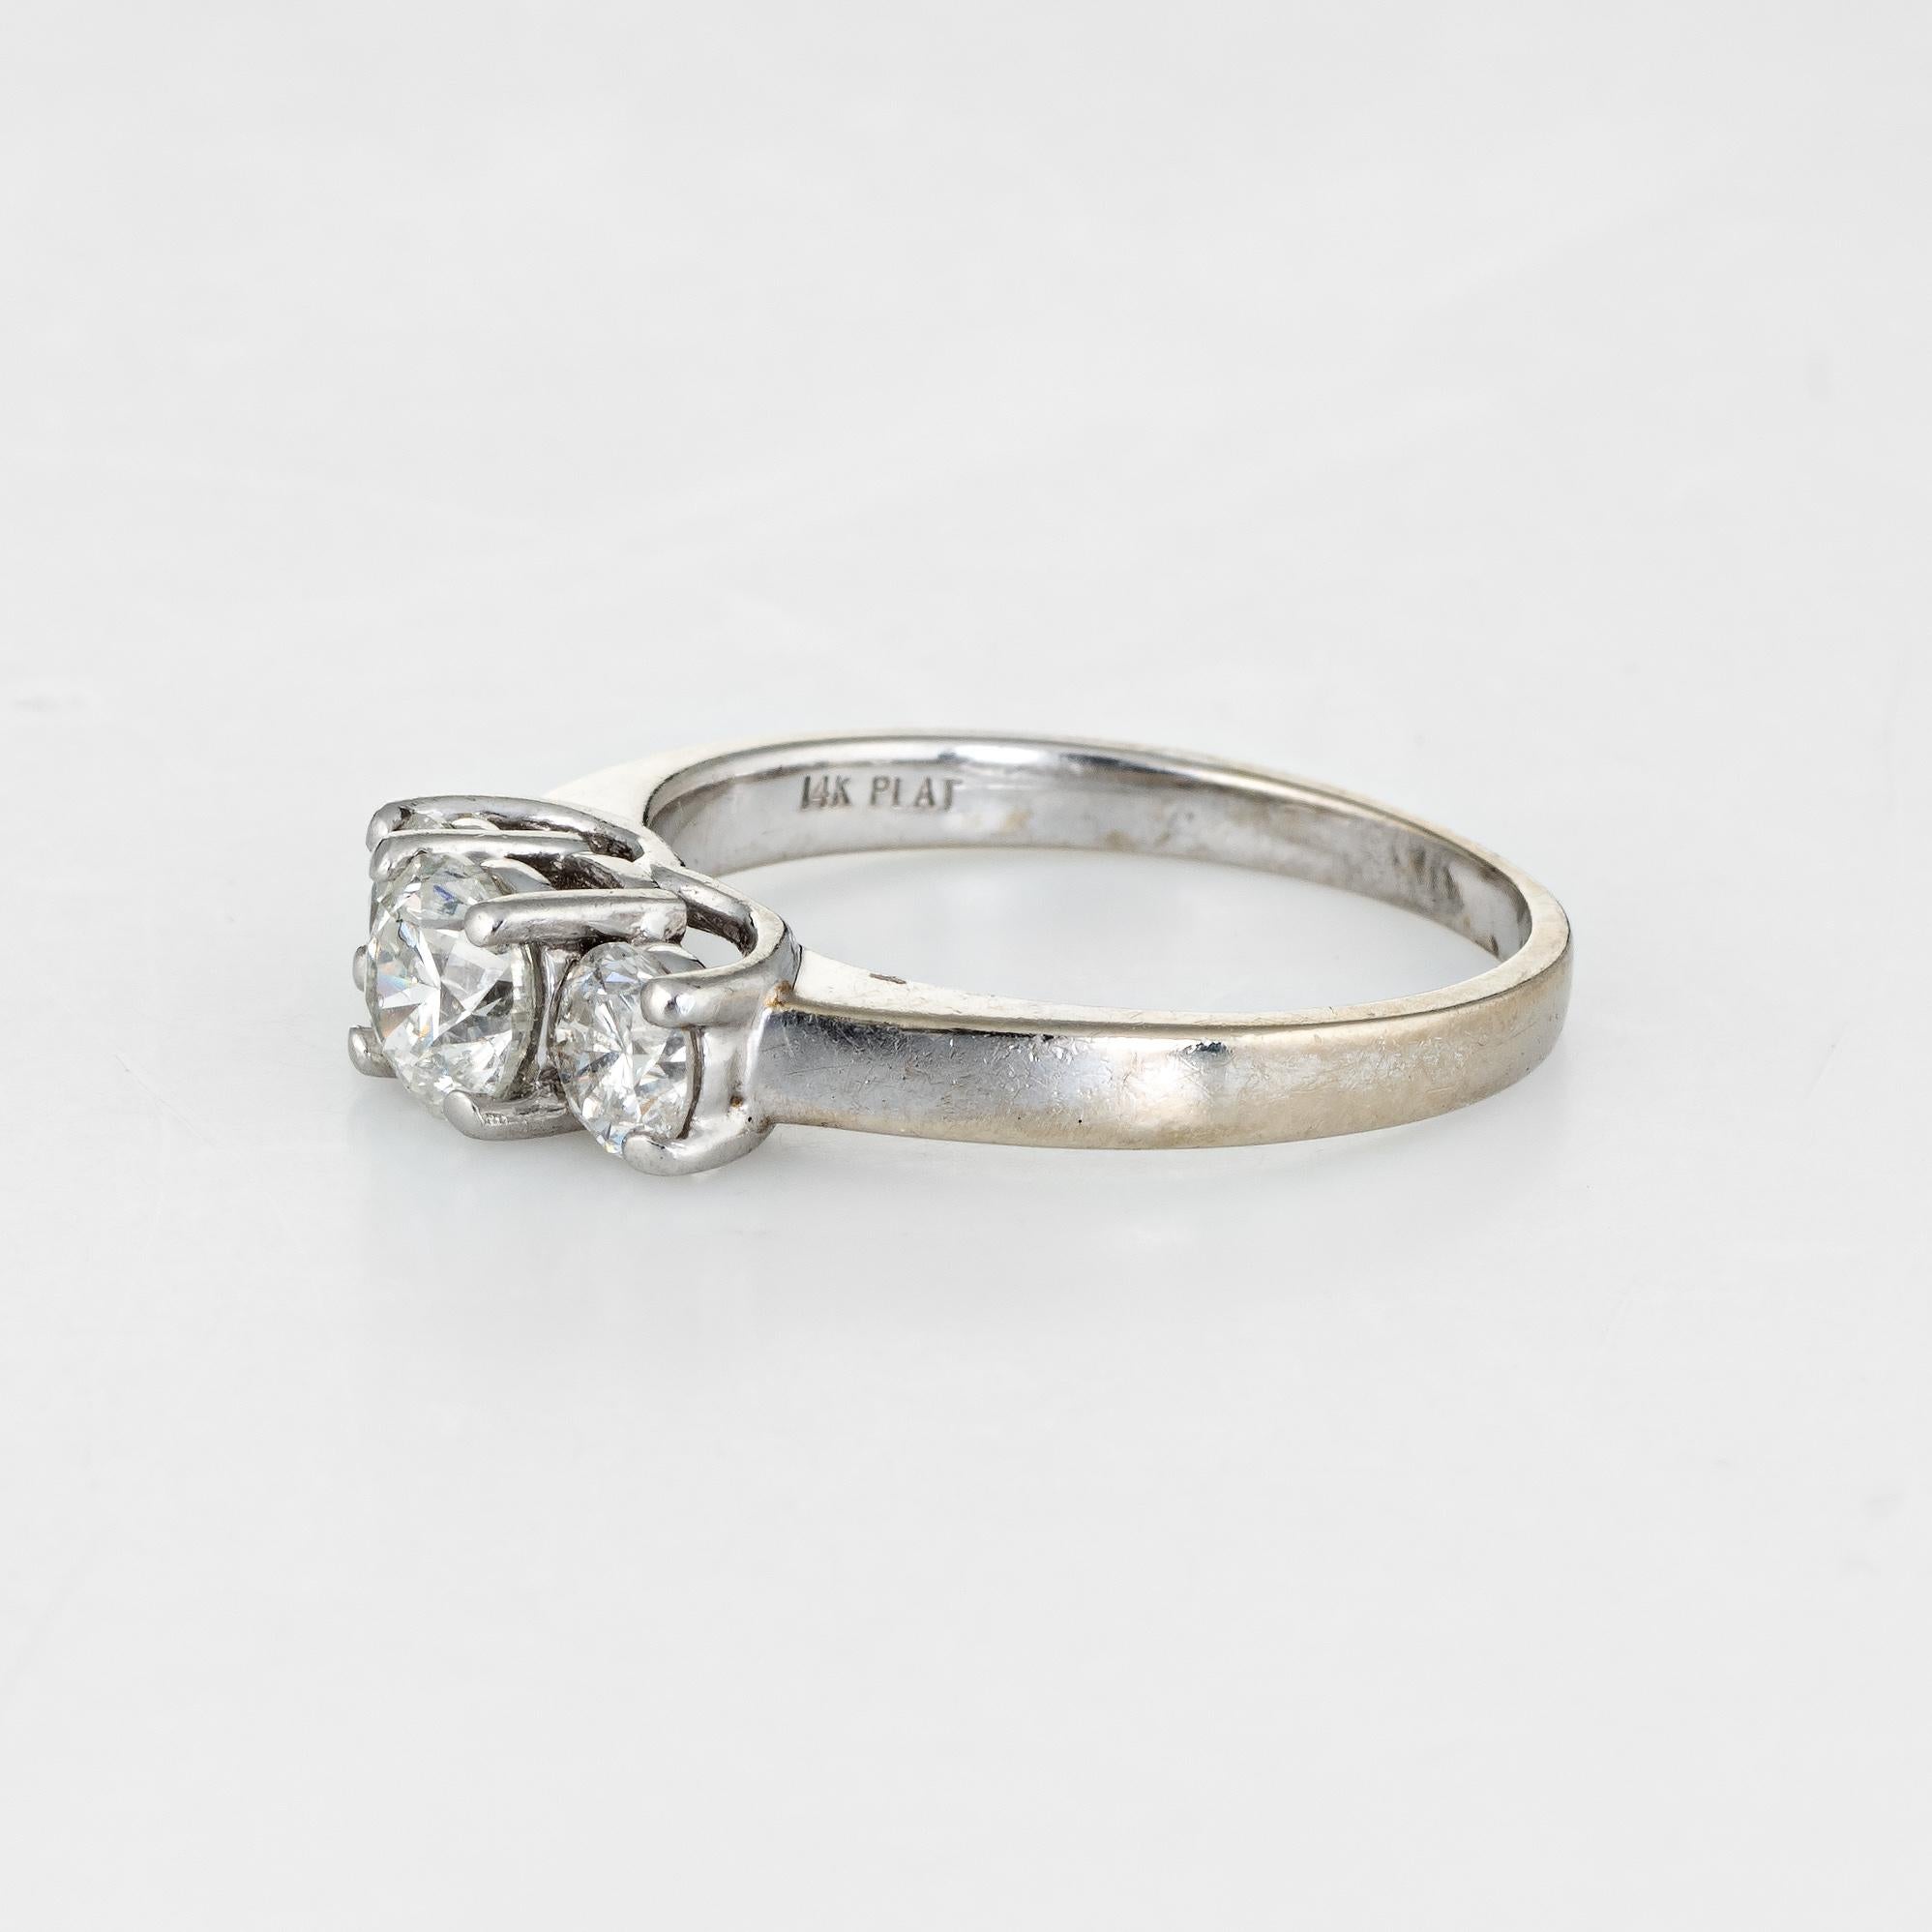 1 carat trilogy diamond ring